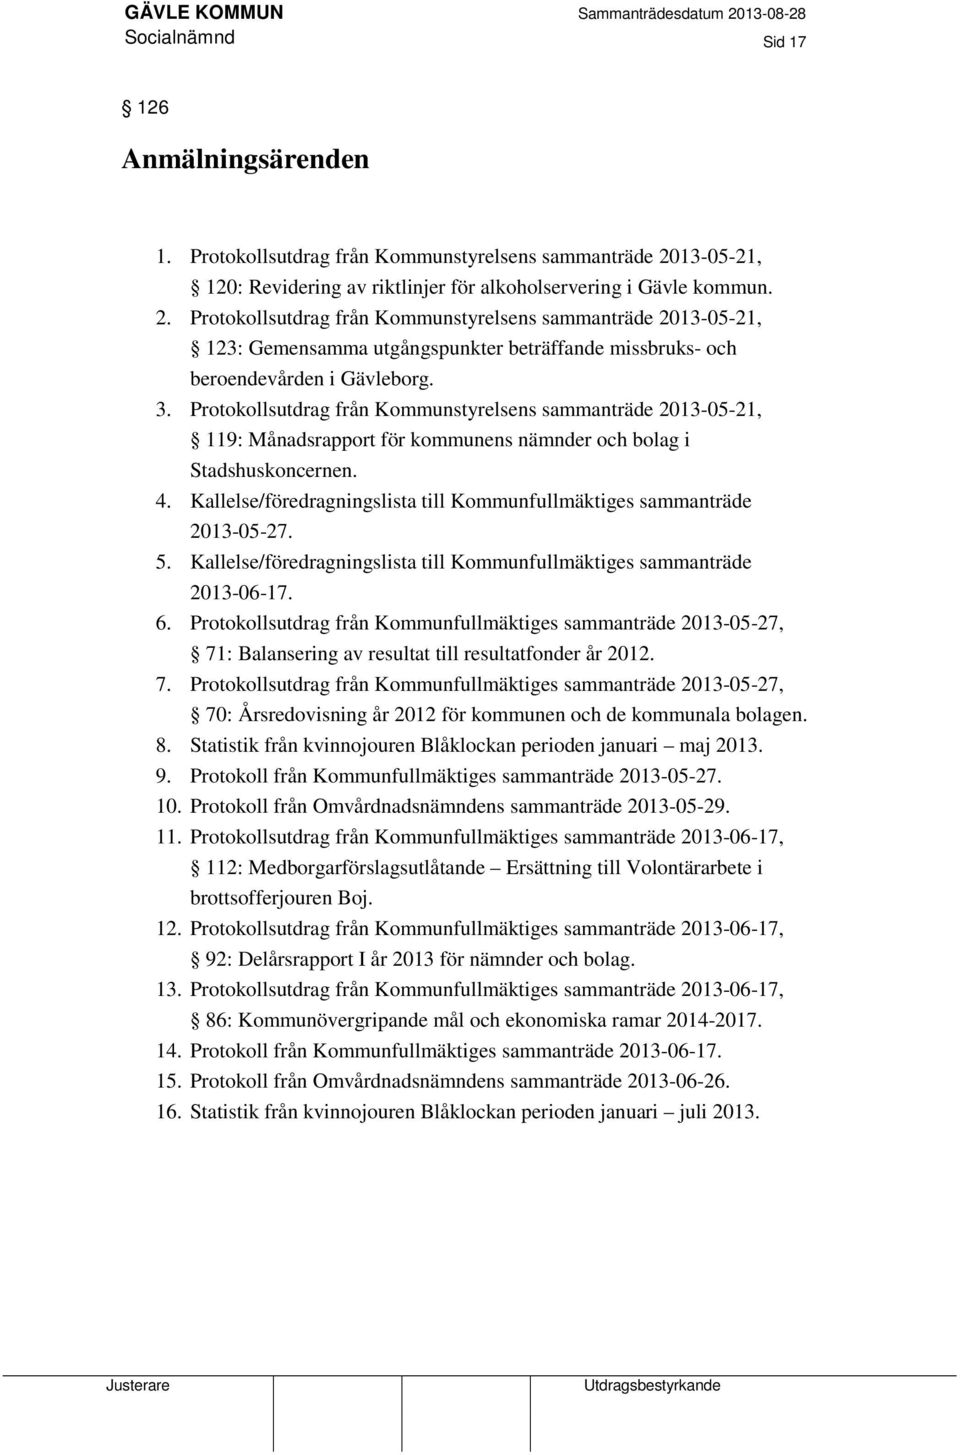 Protokollsutdrag från Kommunstyrelsens sammanträde 2013-05-21, 123: Gemensamma utgångspunkter beträffande missbruks- och beroendevården i Gävleborg. 3.